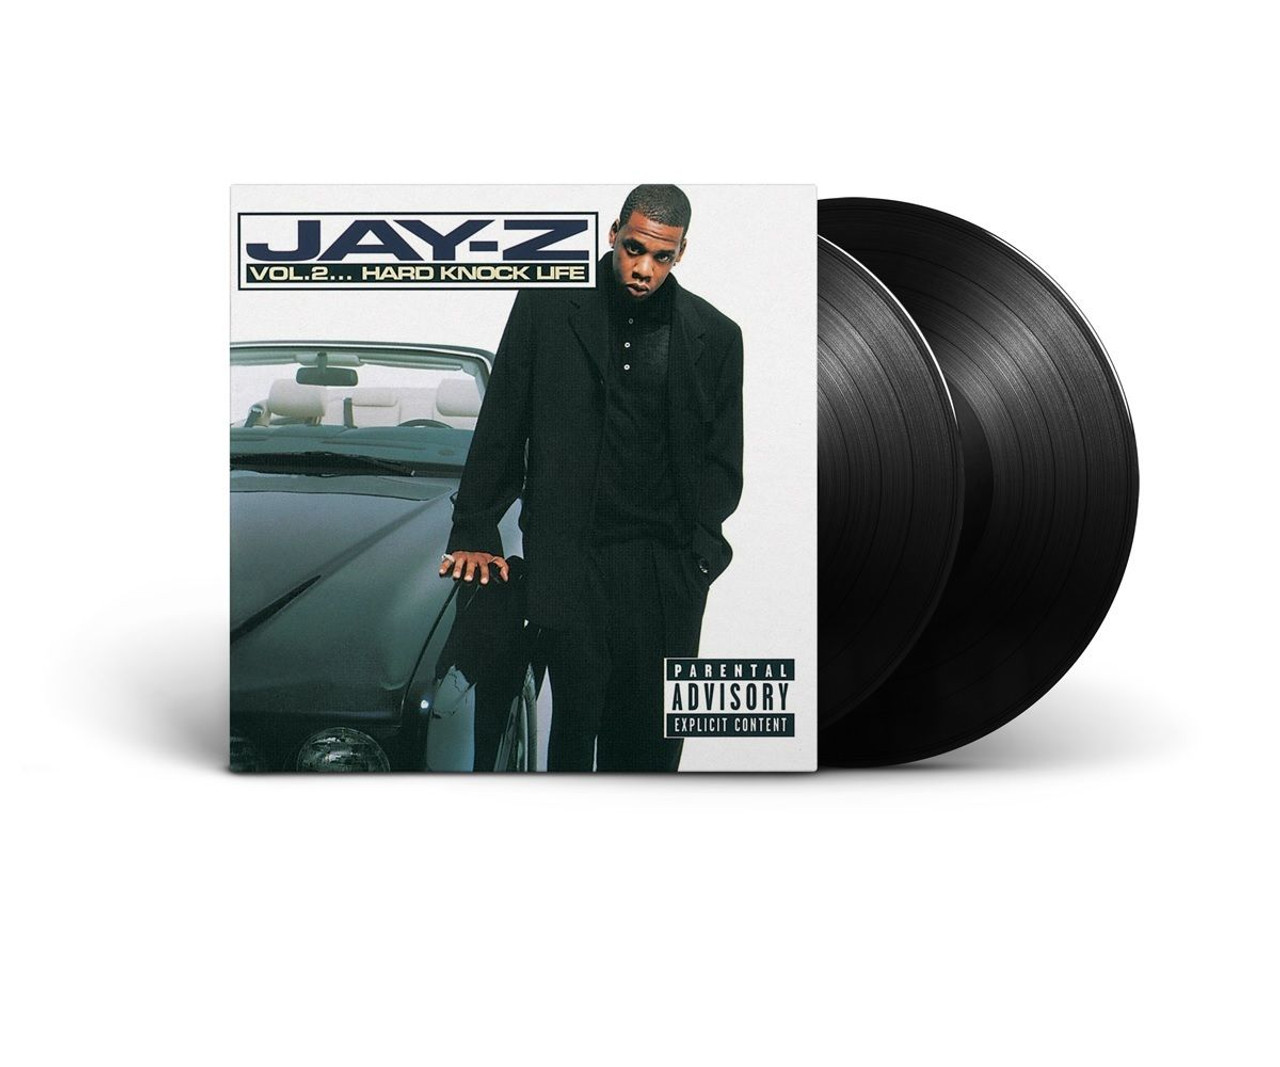 Jay-Z, Vol 2 Hard Knock life album cover